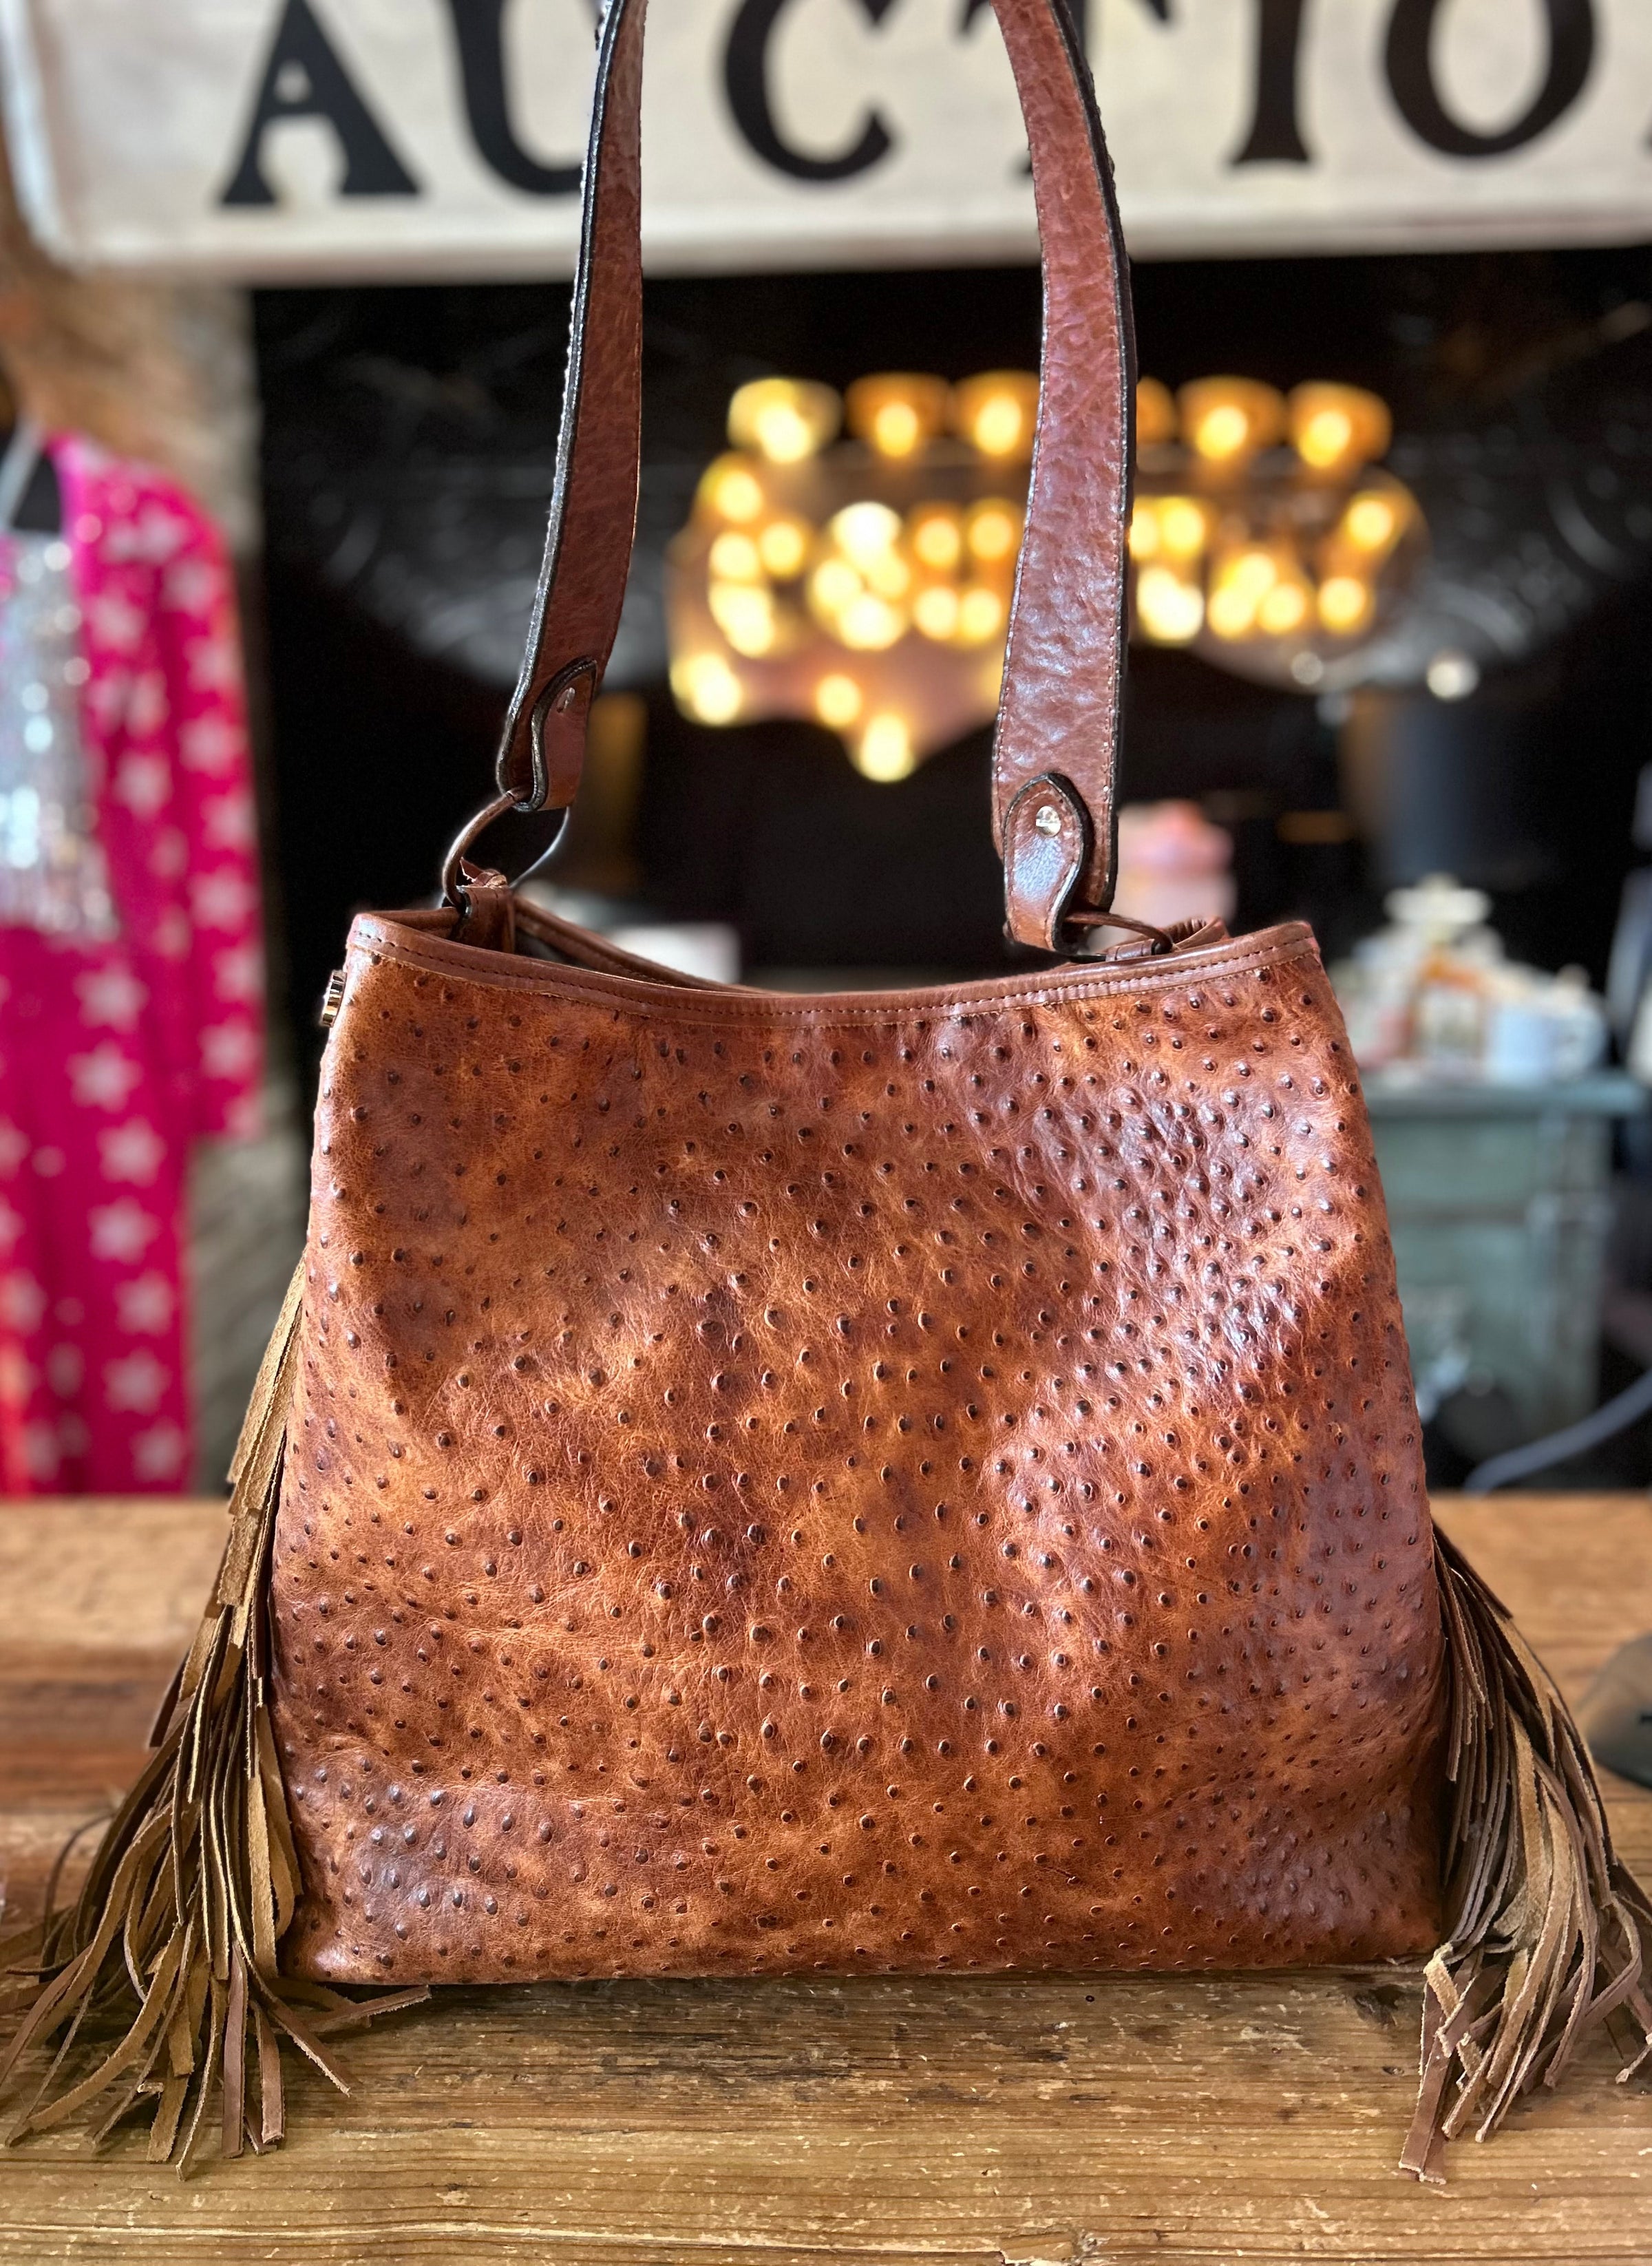 Louis Vuitton Hand Bag - Doublechecked By Entrupy